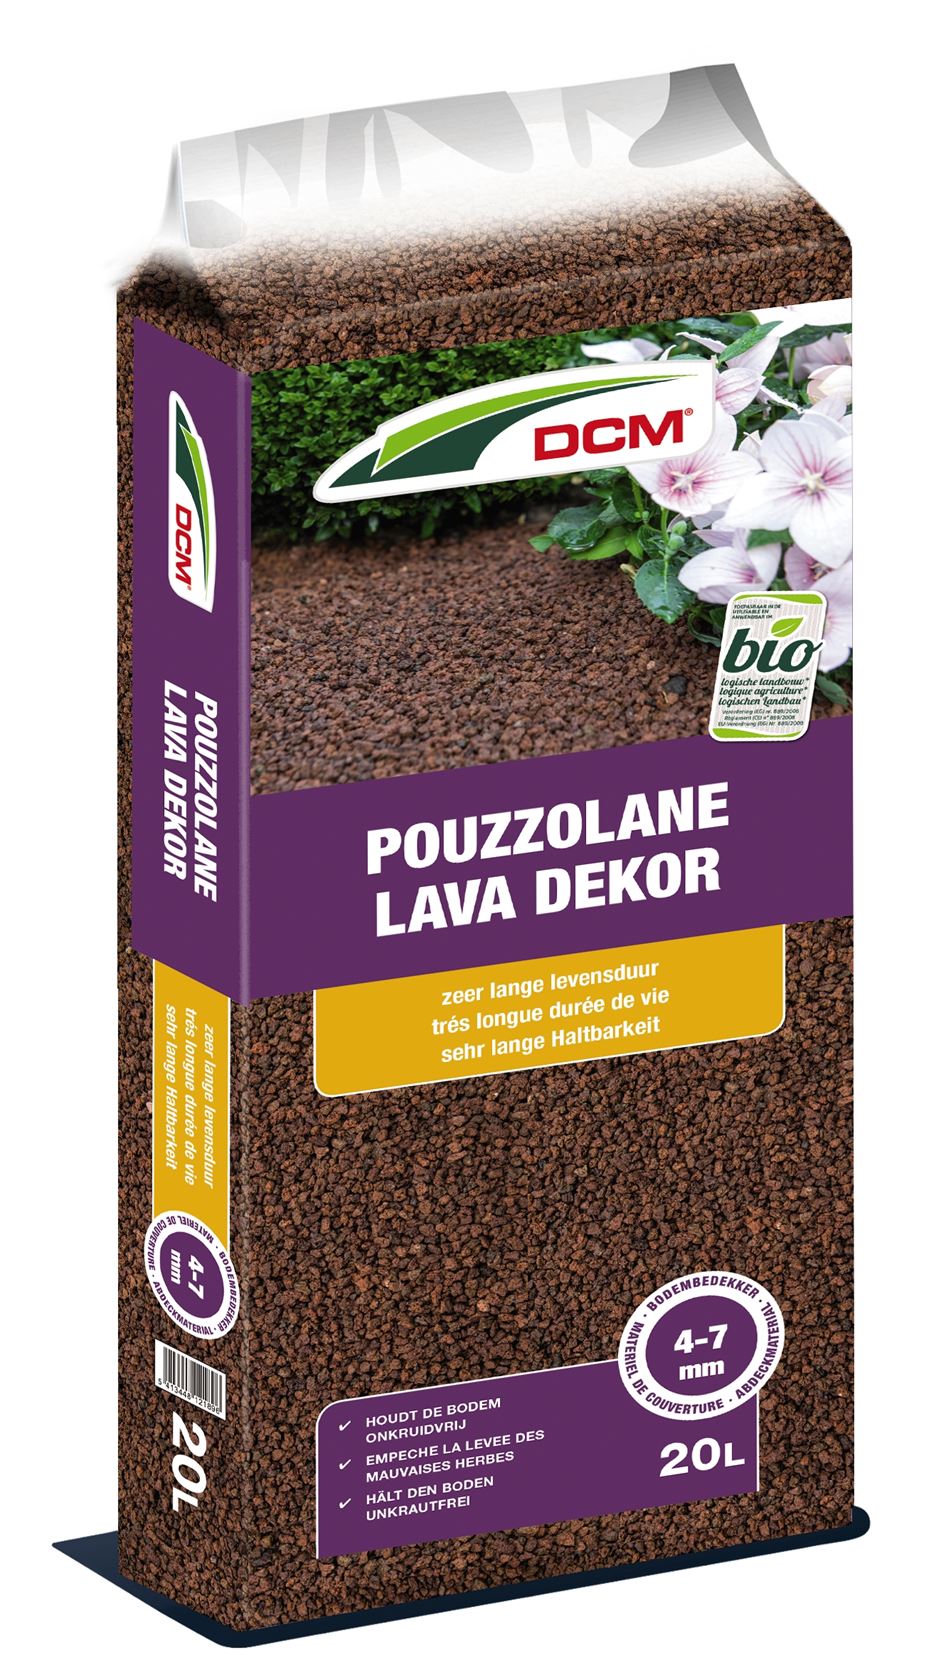 Pouzzolane-lava-dekor-20L-Bio-rode-lavakorrel-4-7mm